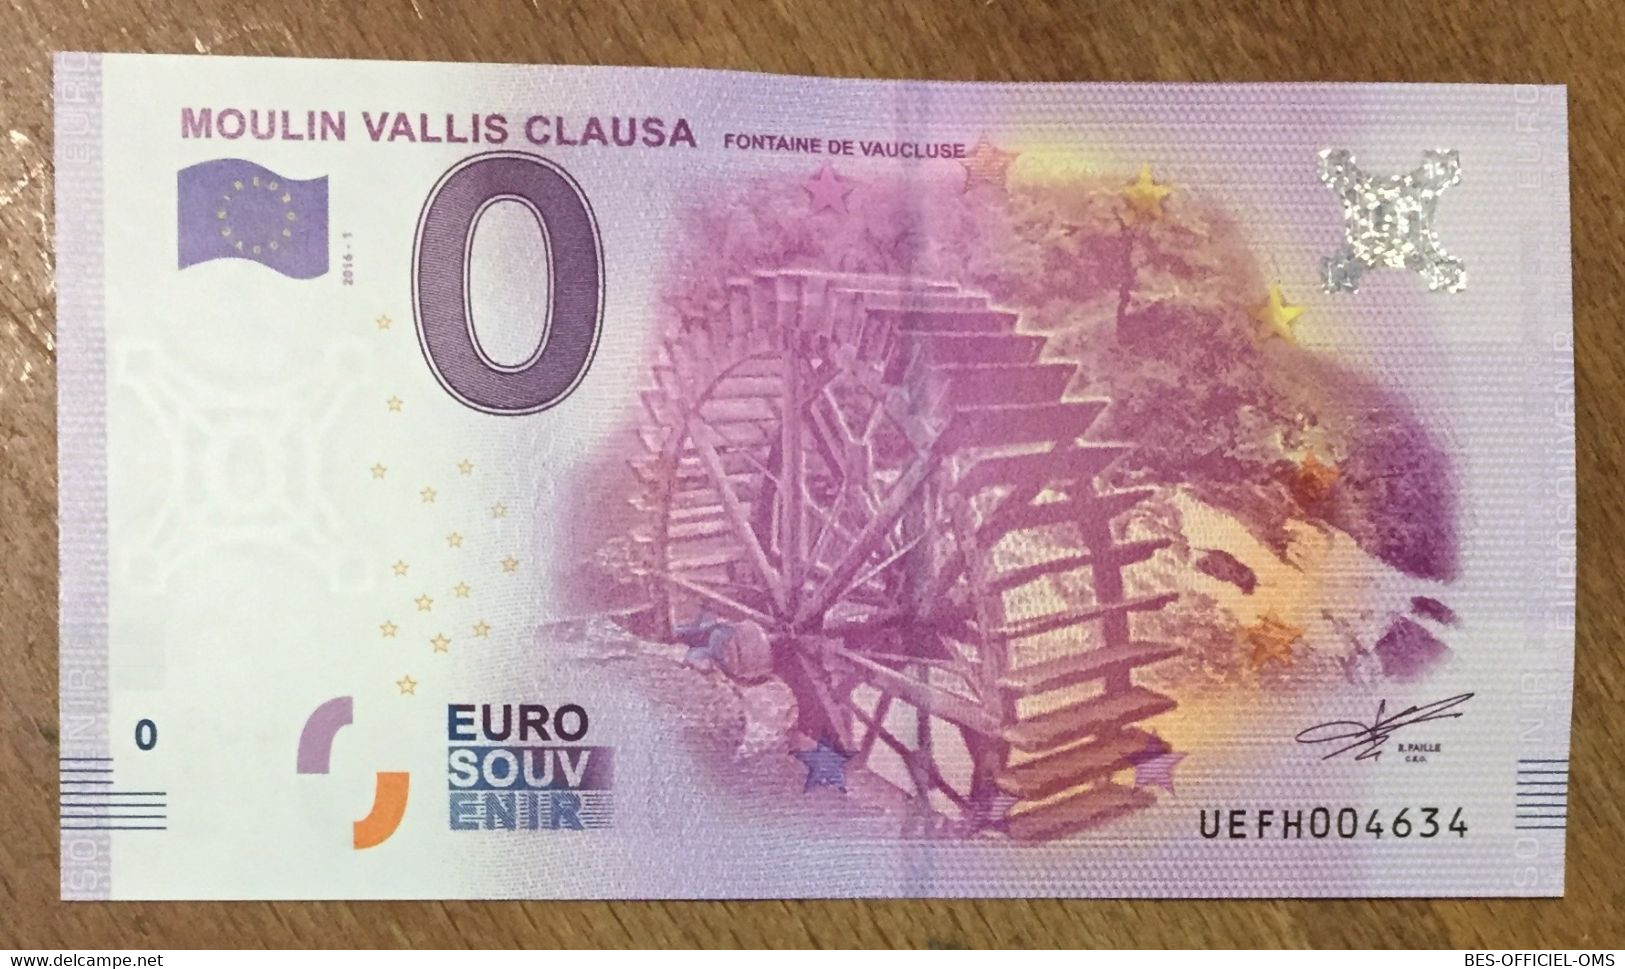 2016 BILLET 0 EURO SOUVENIR DPT 84 MOULIN VALLIS CLAUSA ZERO 0 EURO SCHEIN BANKNOTE PAPER MONEY - Essais Privés / Non-officiels